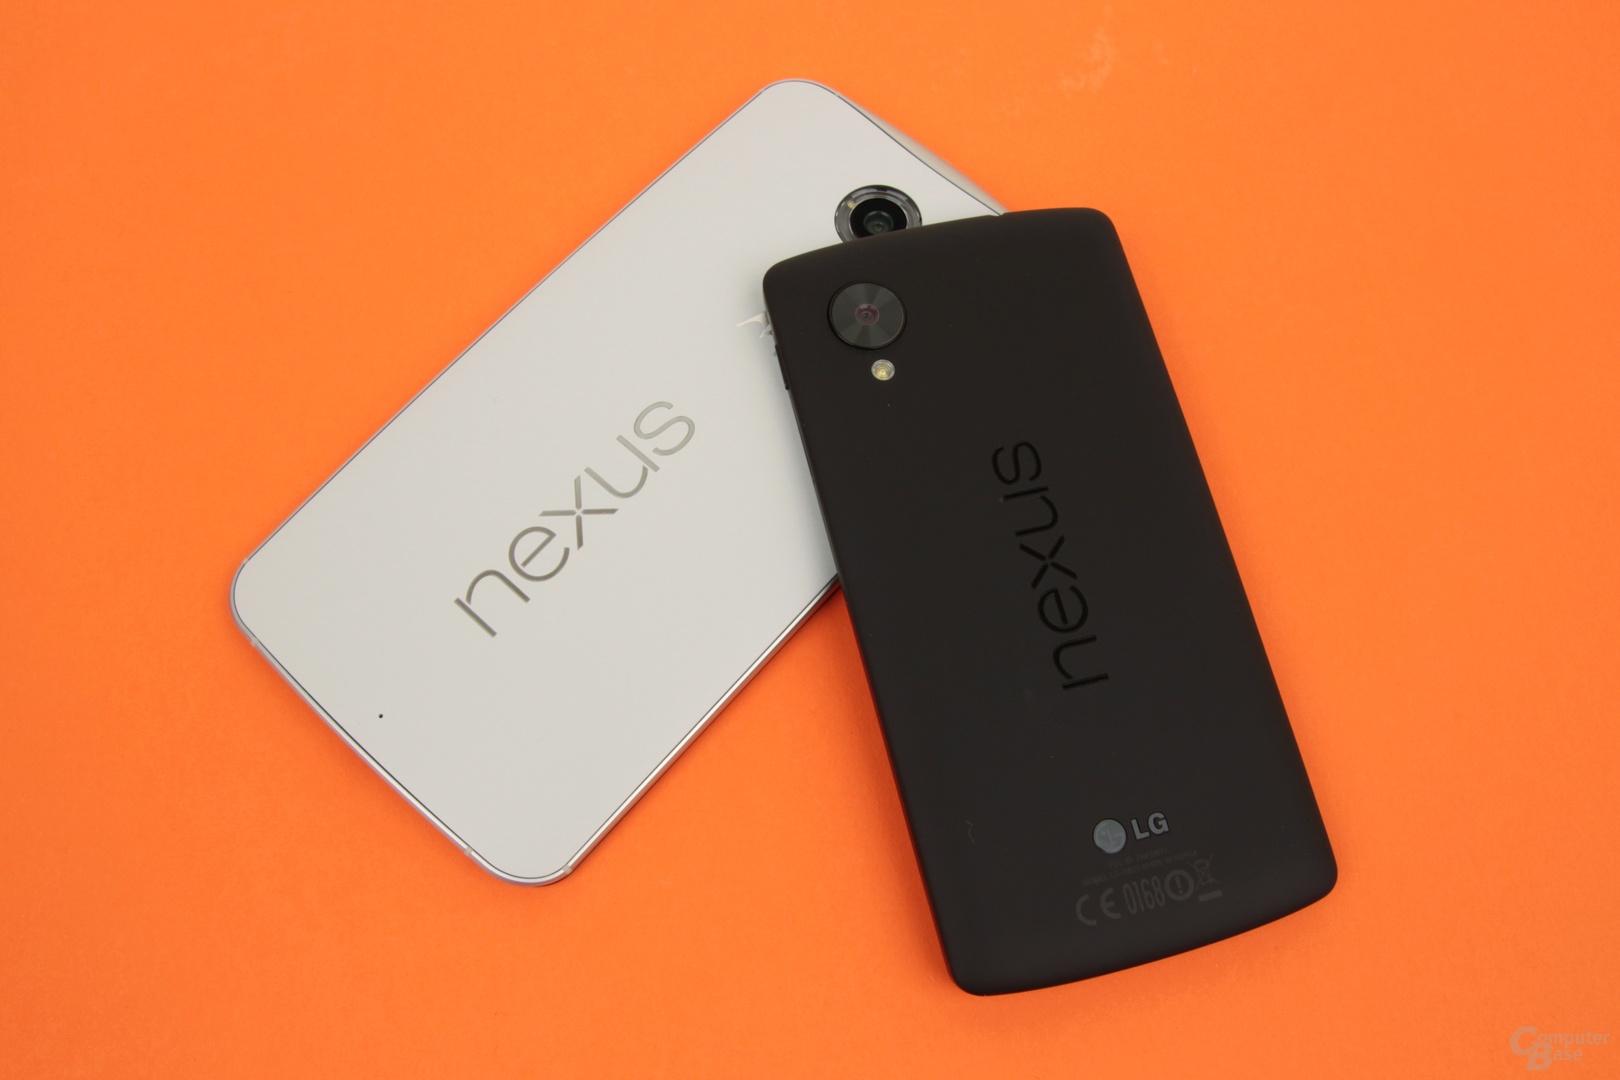 Das Nexus 6 vor allem größer als das Nexus 5, aber nicht durchweg besser